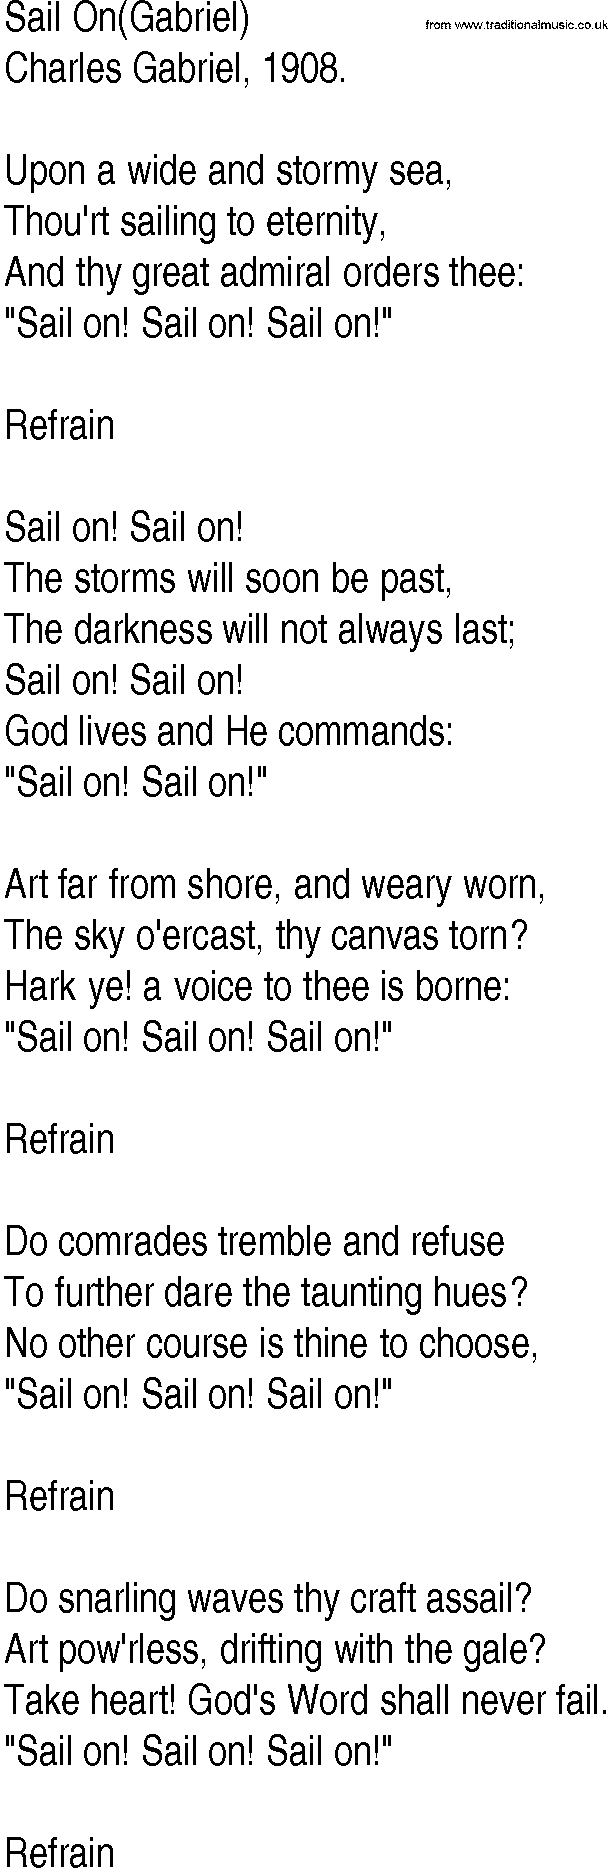 Hymn and Gospel Song: Sail On(Gabriel) by Charles Gabriel lyrics